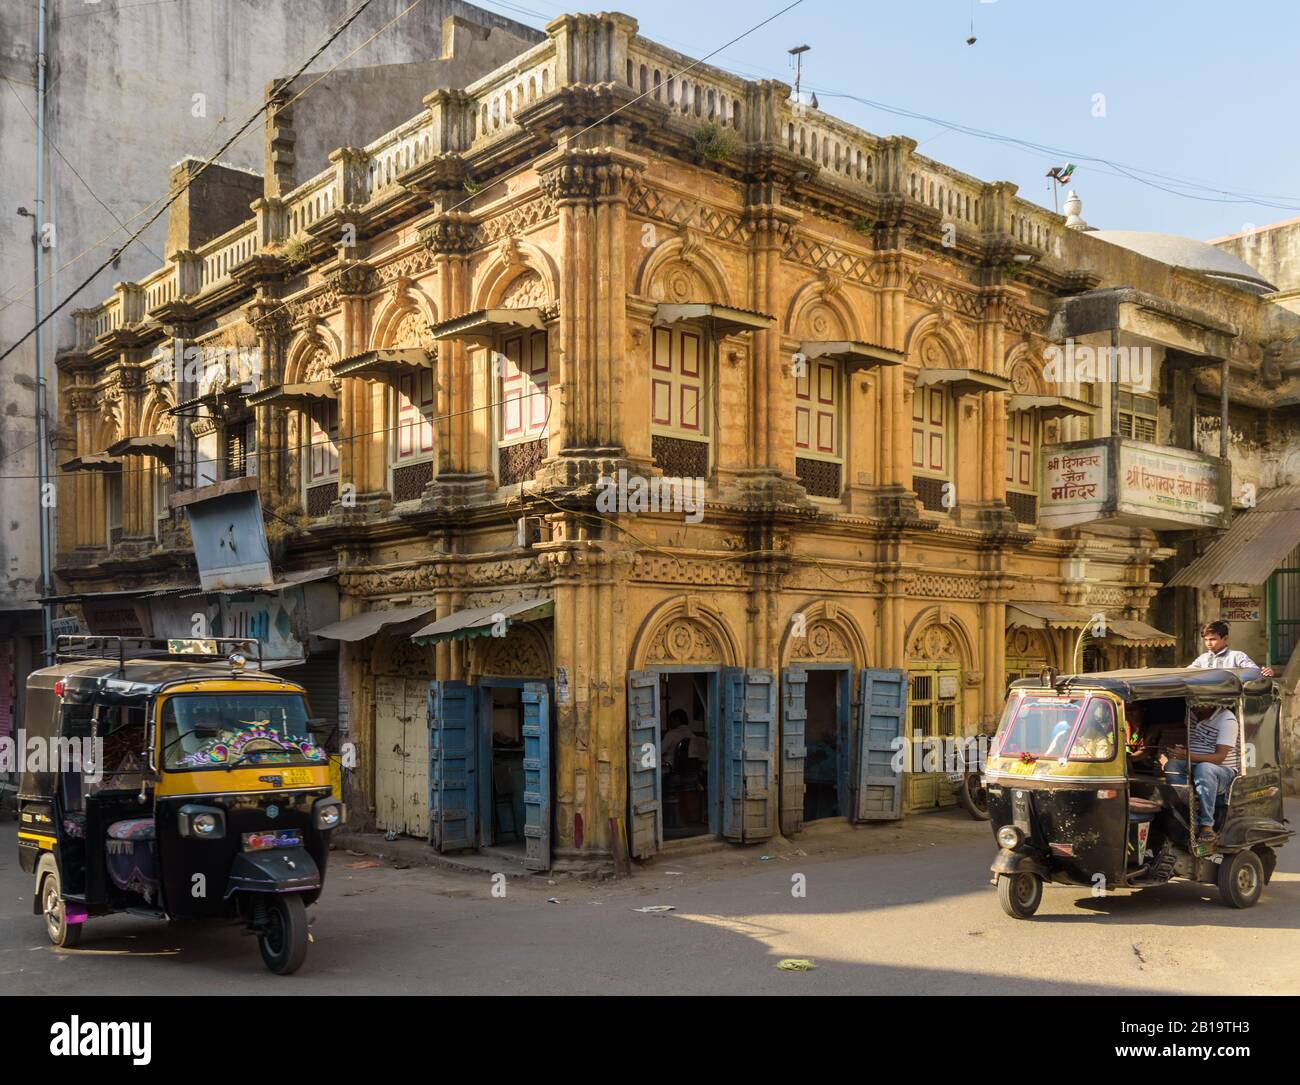 Junagadh, Gujarat, Inde - décembre 2018 : un bel édifice jaune avec des fenêtres à arcades et des portes en bois vintage dans l'ancien marché. Banque D'Images